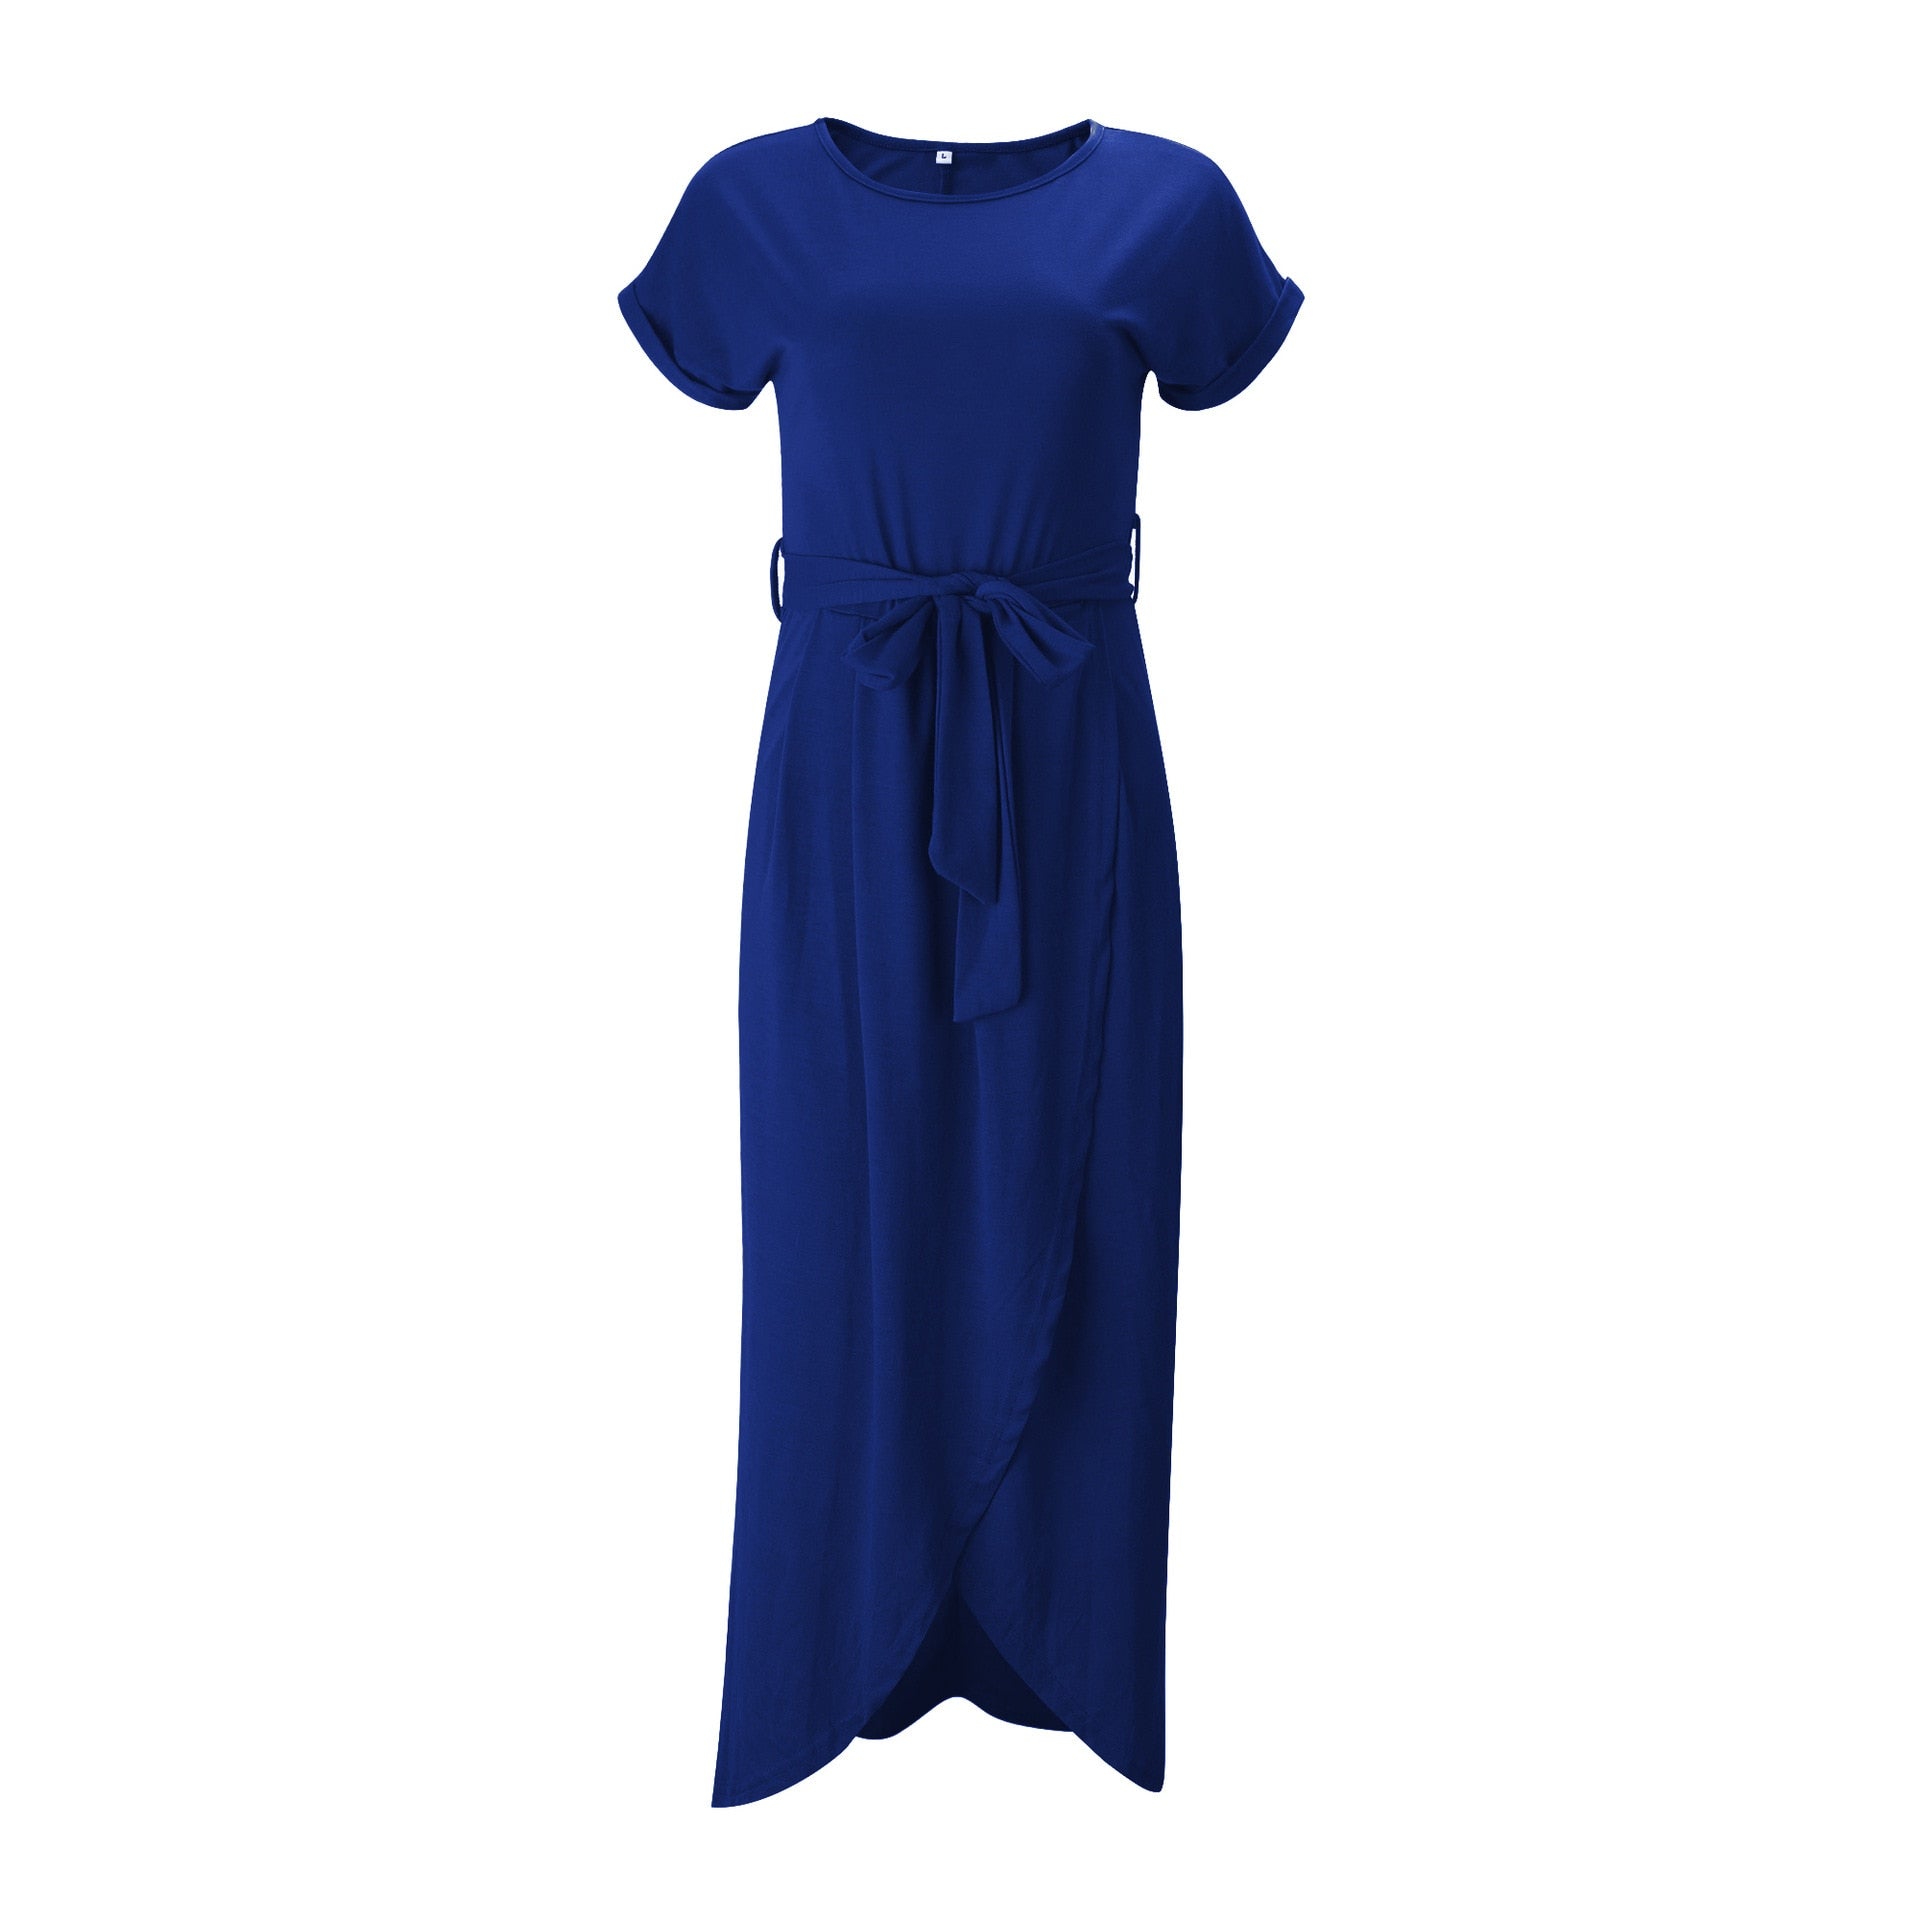 Women's Dress - DromedarShop.com Online Boutique